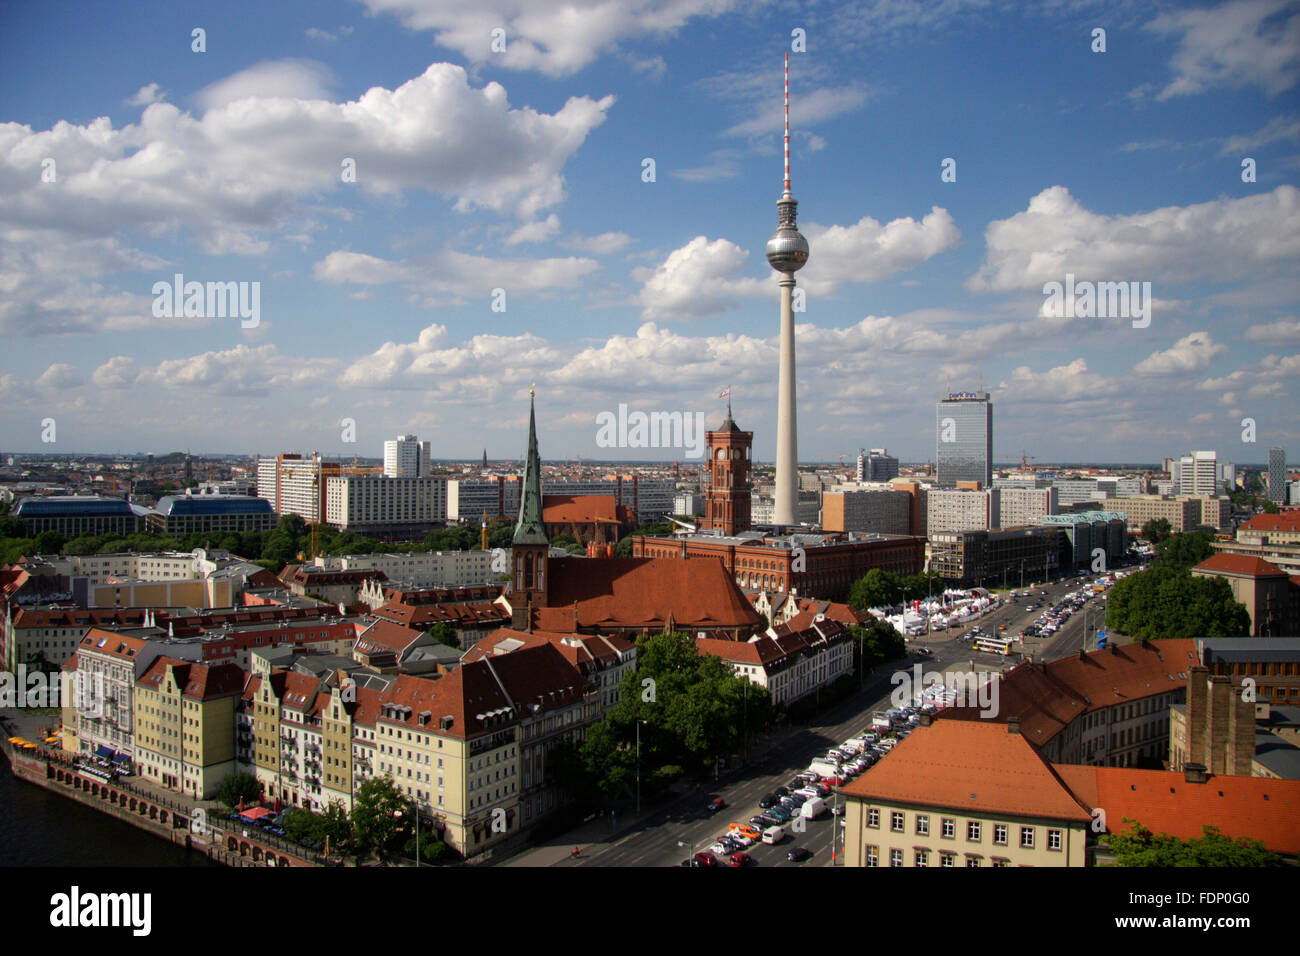 Luftbild: Skyline von Berlin Mitte mit Fernsehturm, Forum Hotel, Rotem Rathaus, Fischerinsel, Berlino. Foto Stock